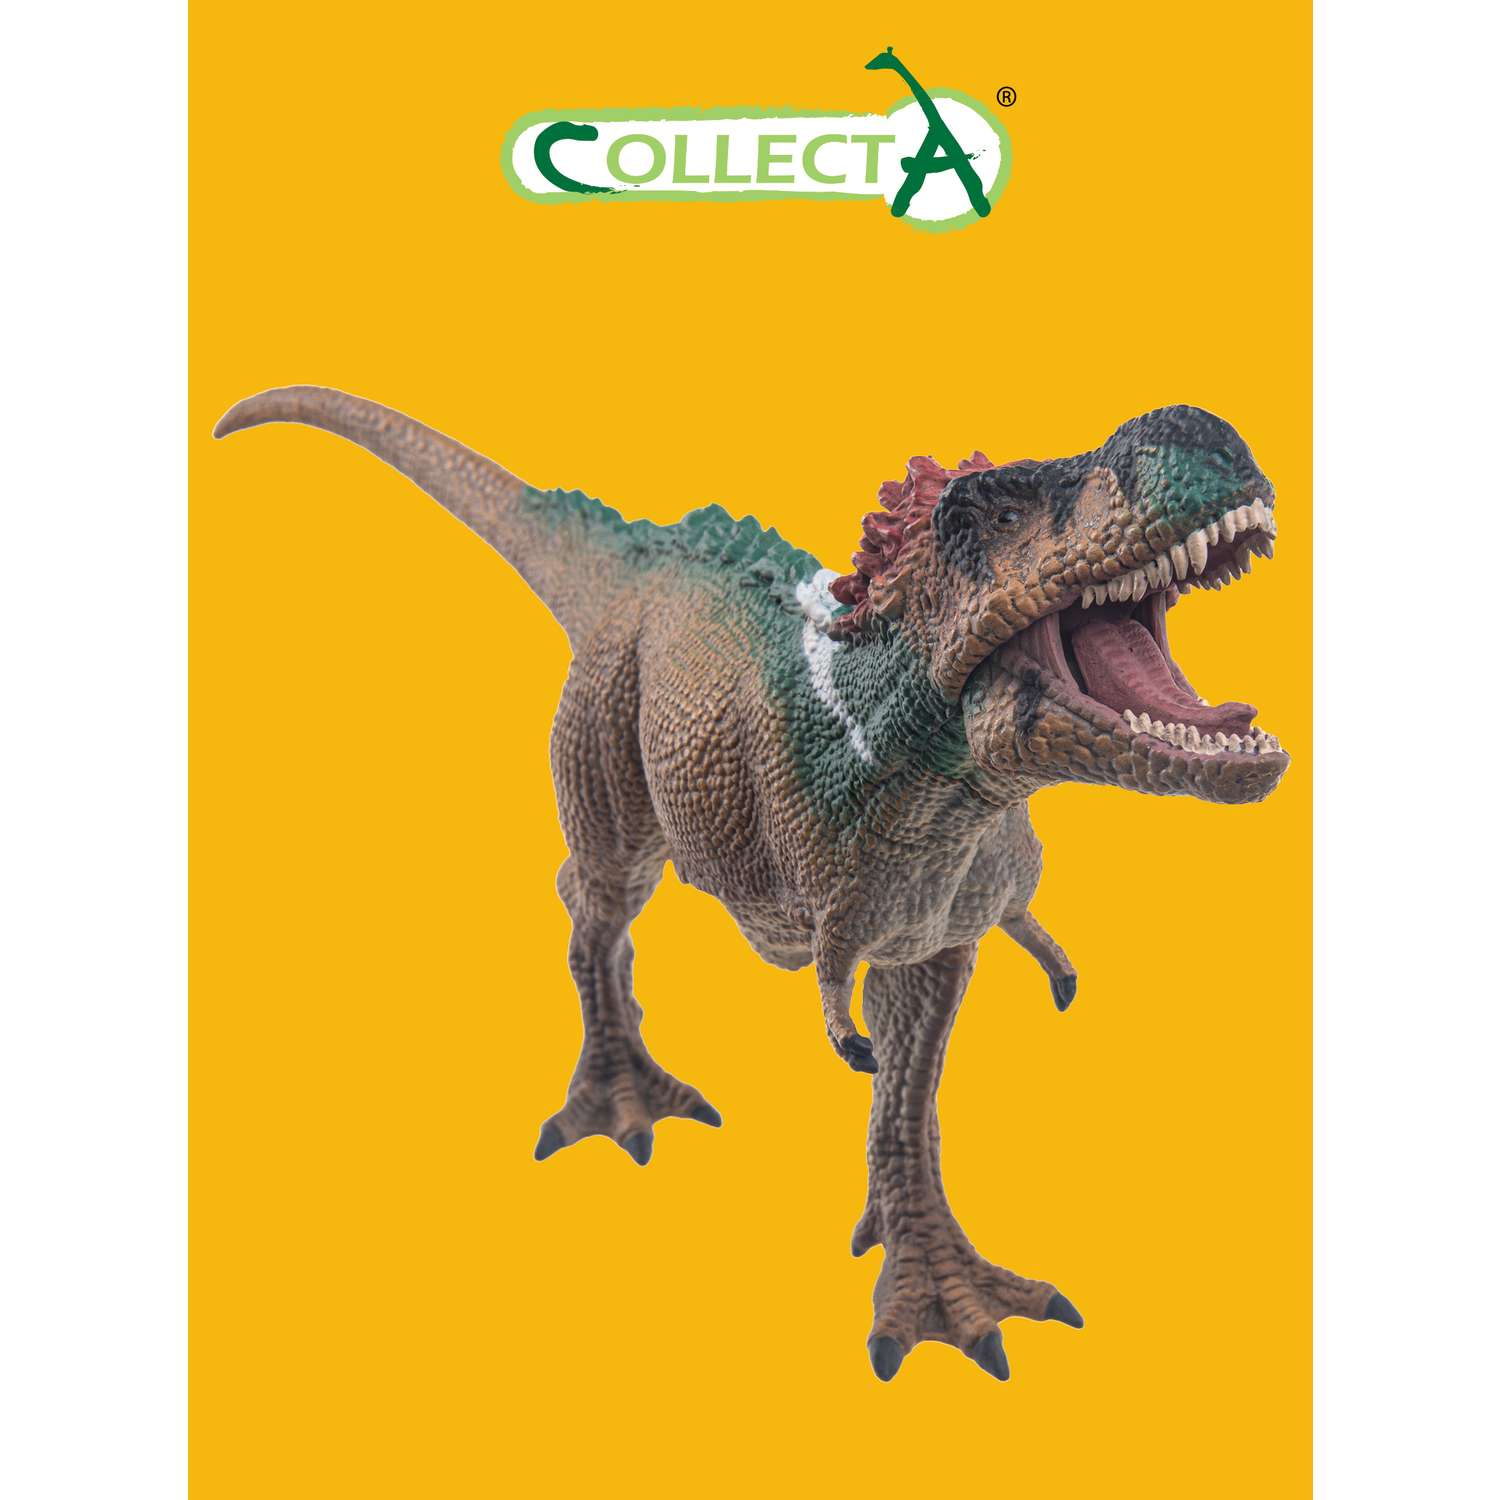 Игрушка Collecta Пернатый Тираннозавр Рекс с подвижной челюстью 1:40 фигурка динозавра - фото 1